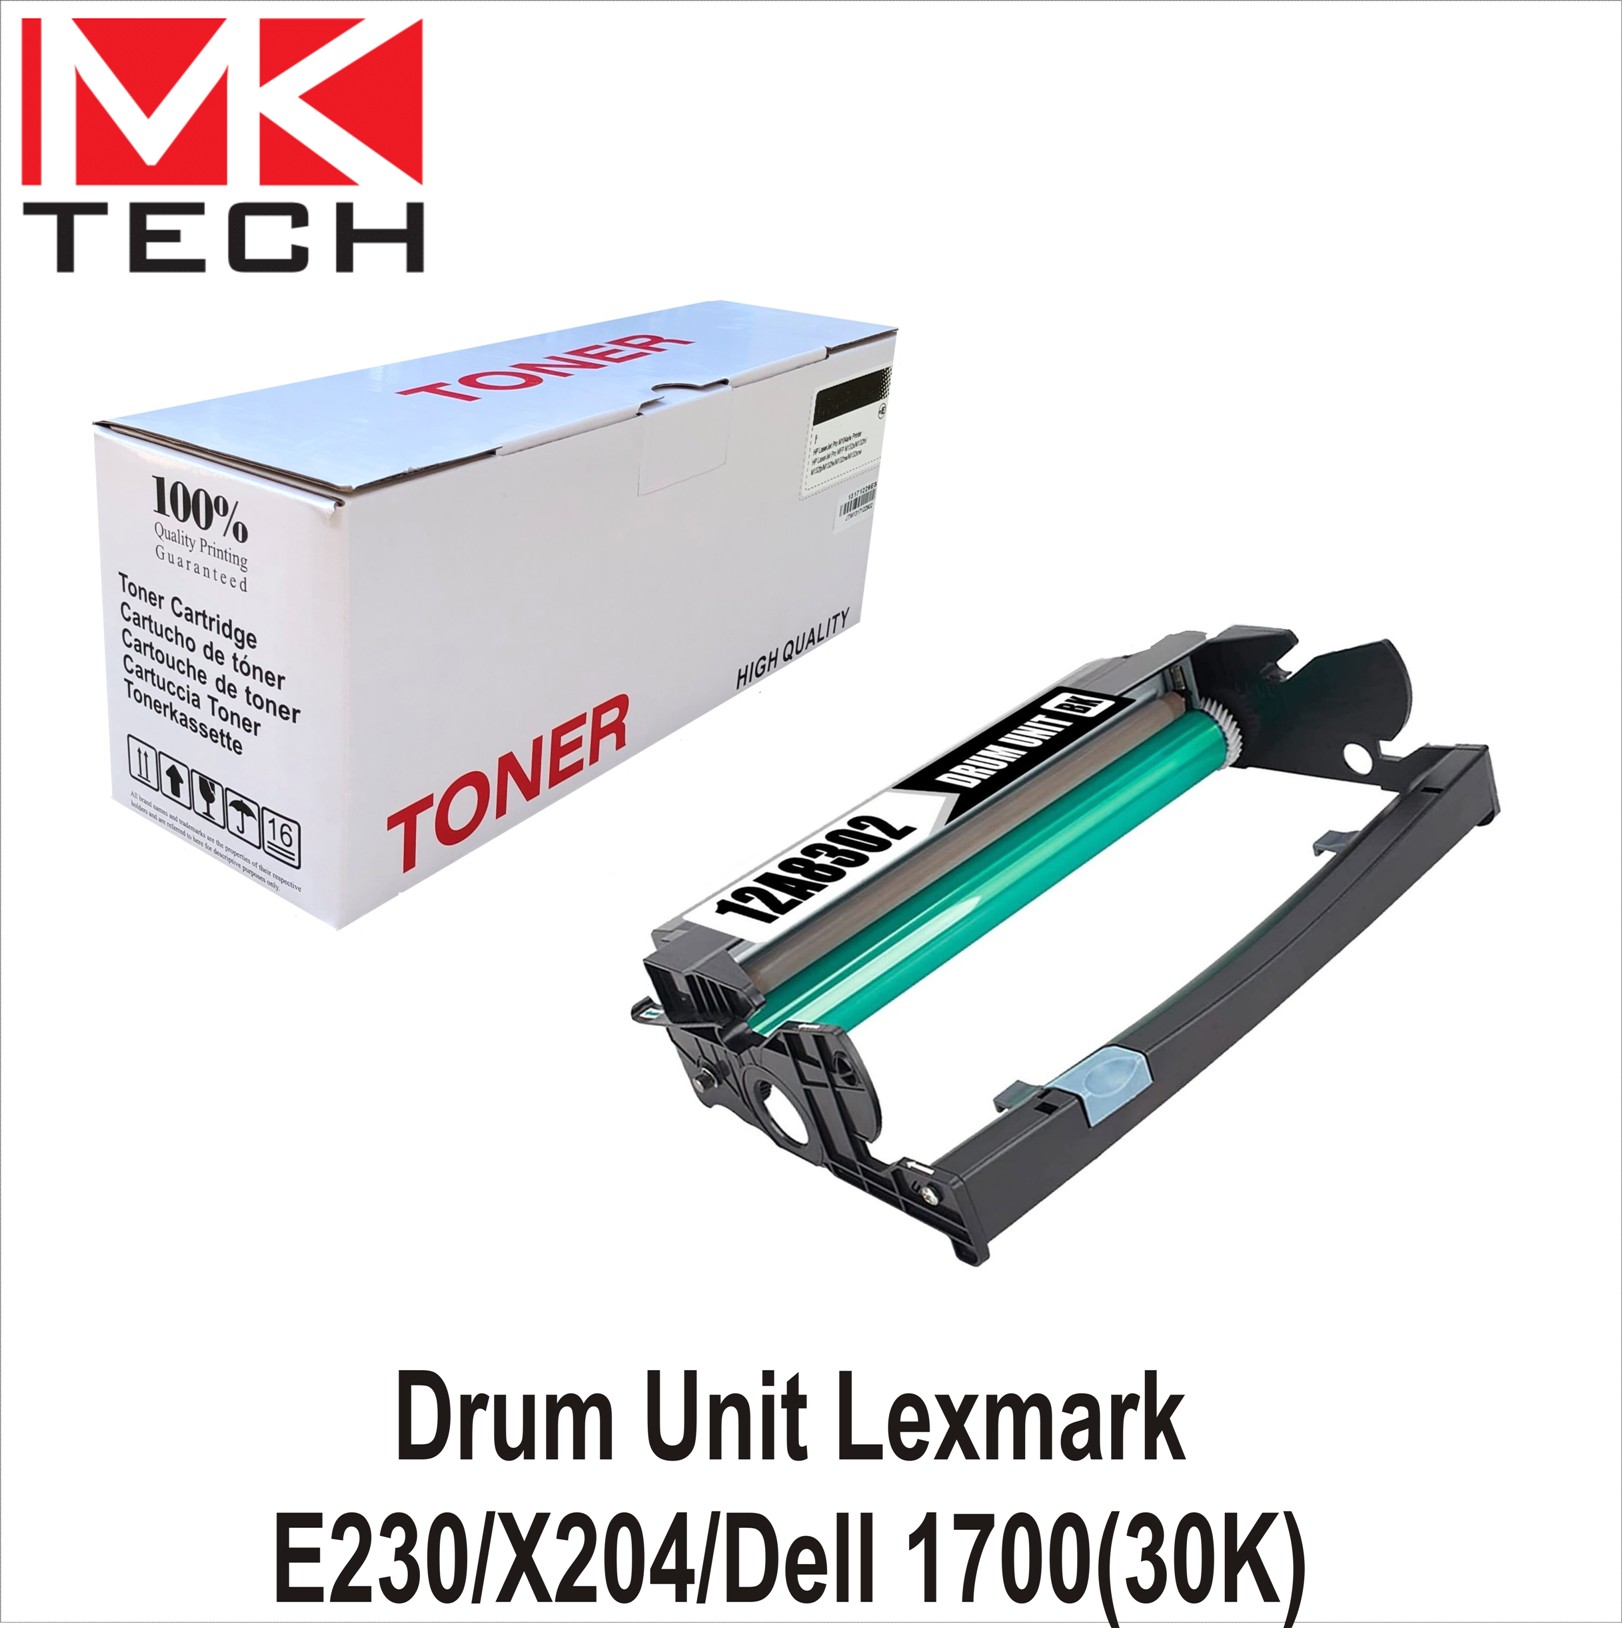 Drum Unit Lexmark E230/X204/Dell 1700(30K)MKTECH